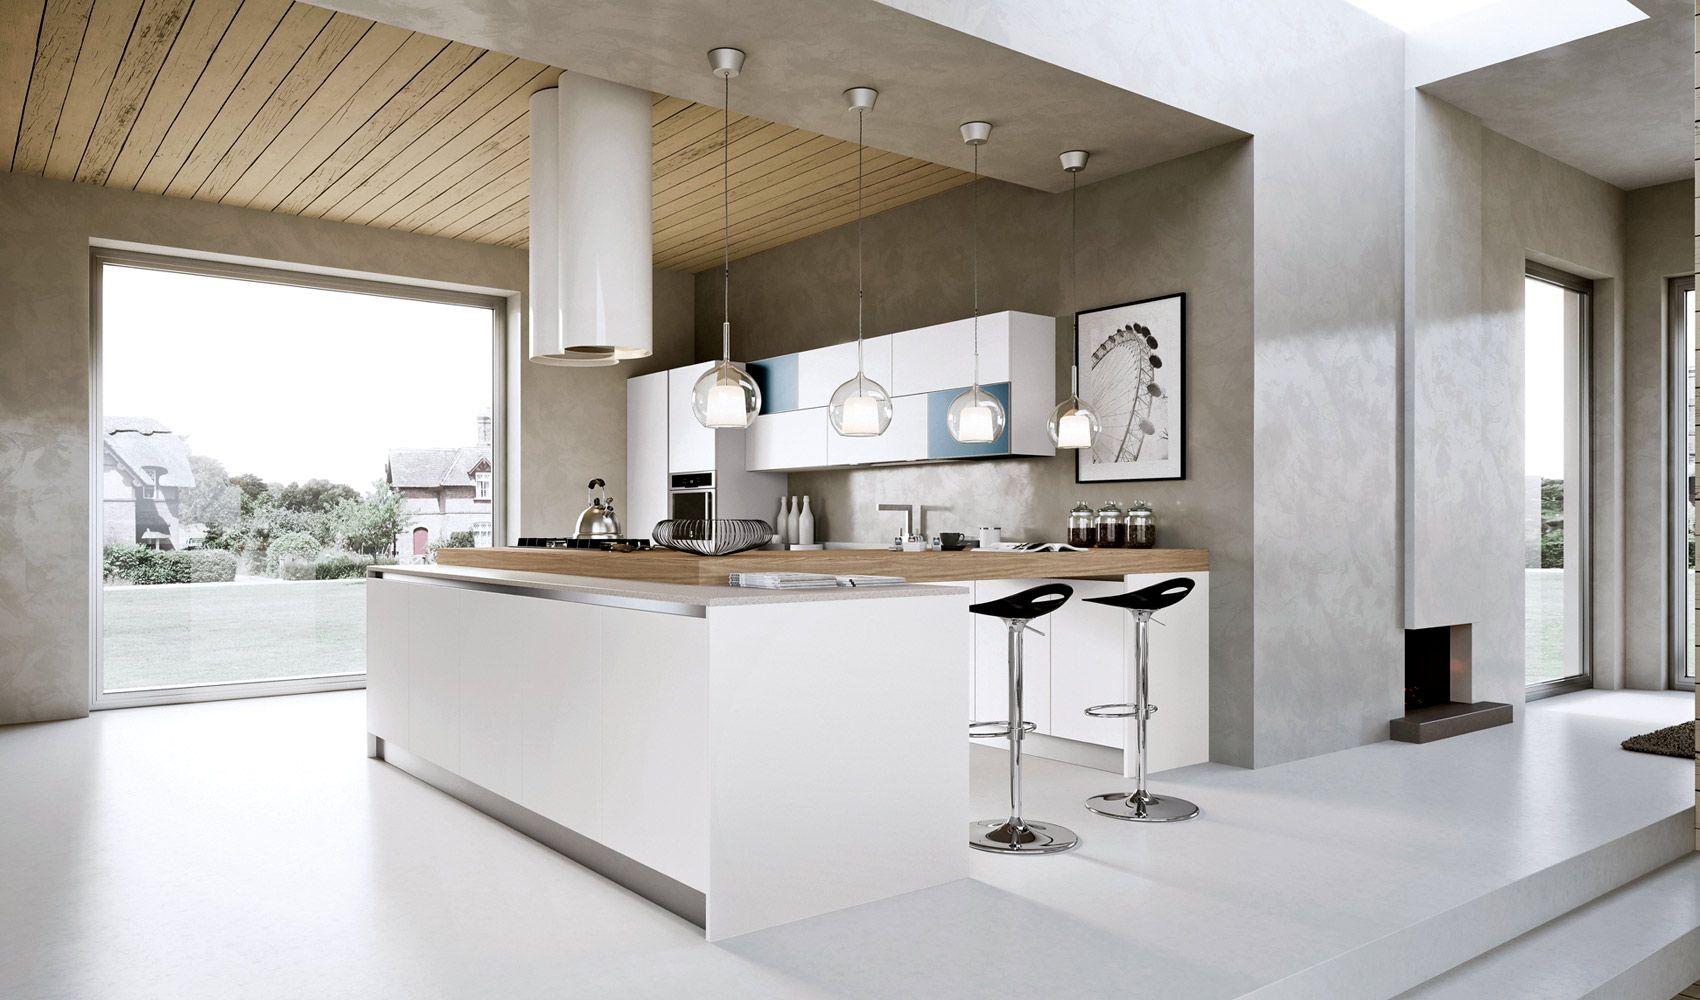 طرح های زیبای کابینت آشپزخانه02